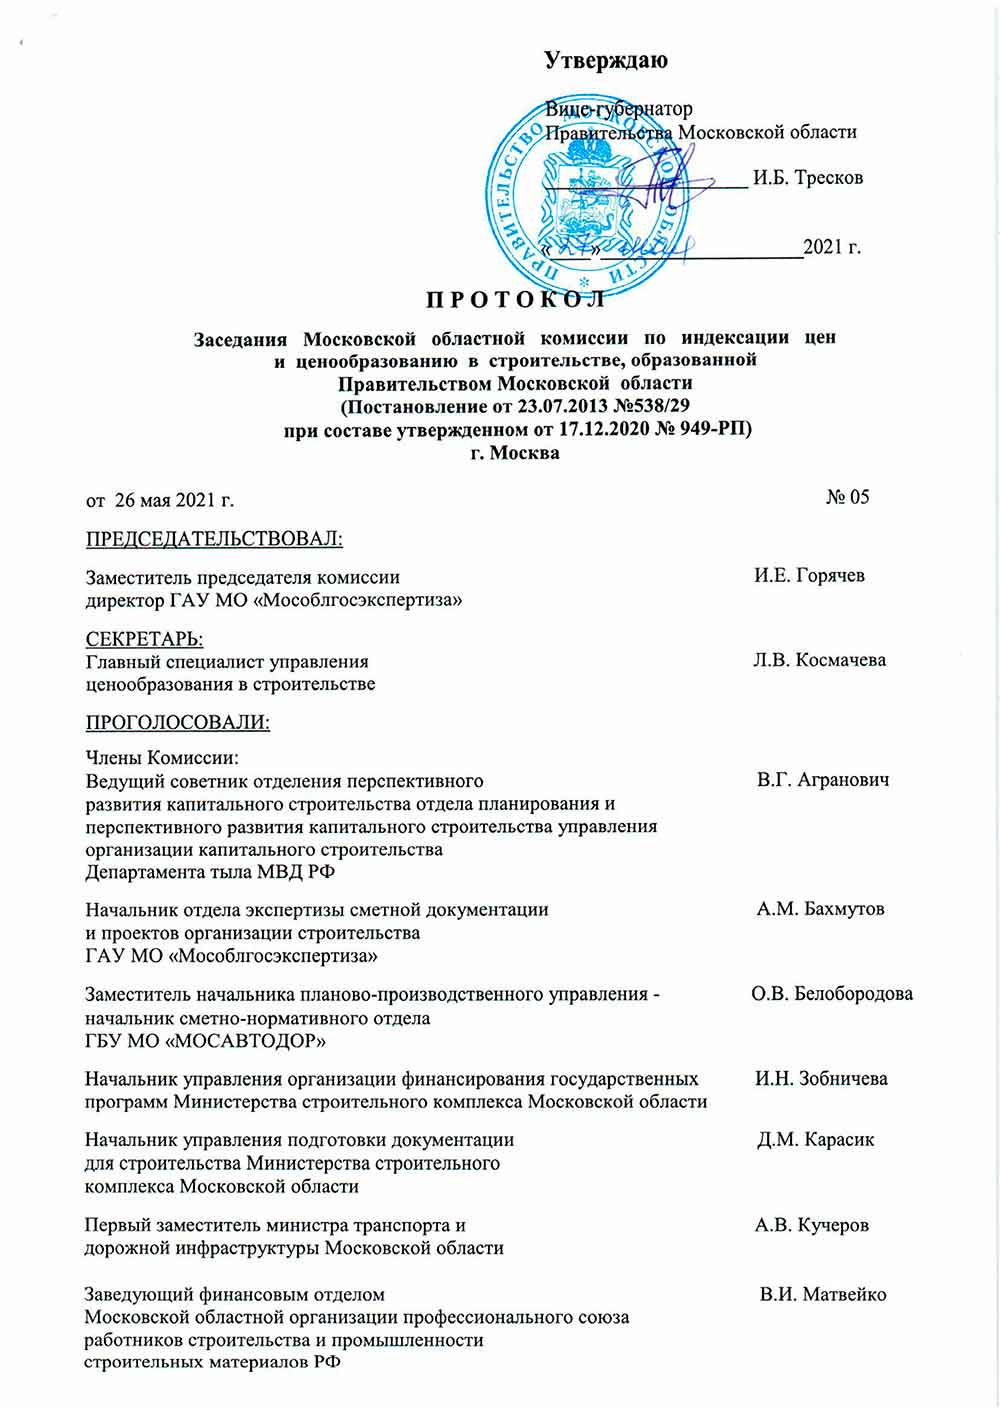 Протокол Мособлгосэкспертизы №05 от 26.05.2021 года